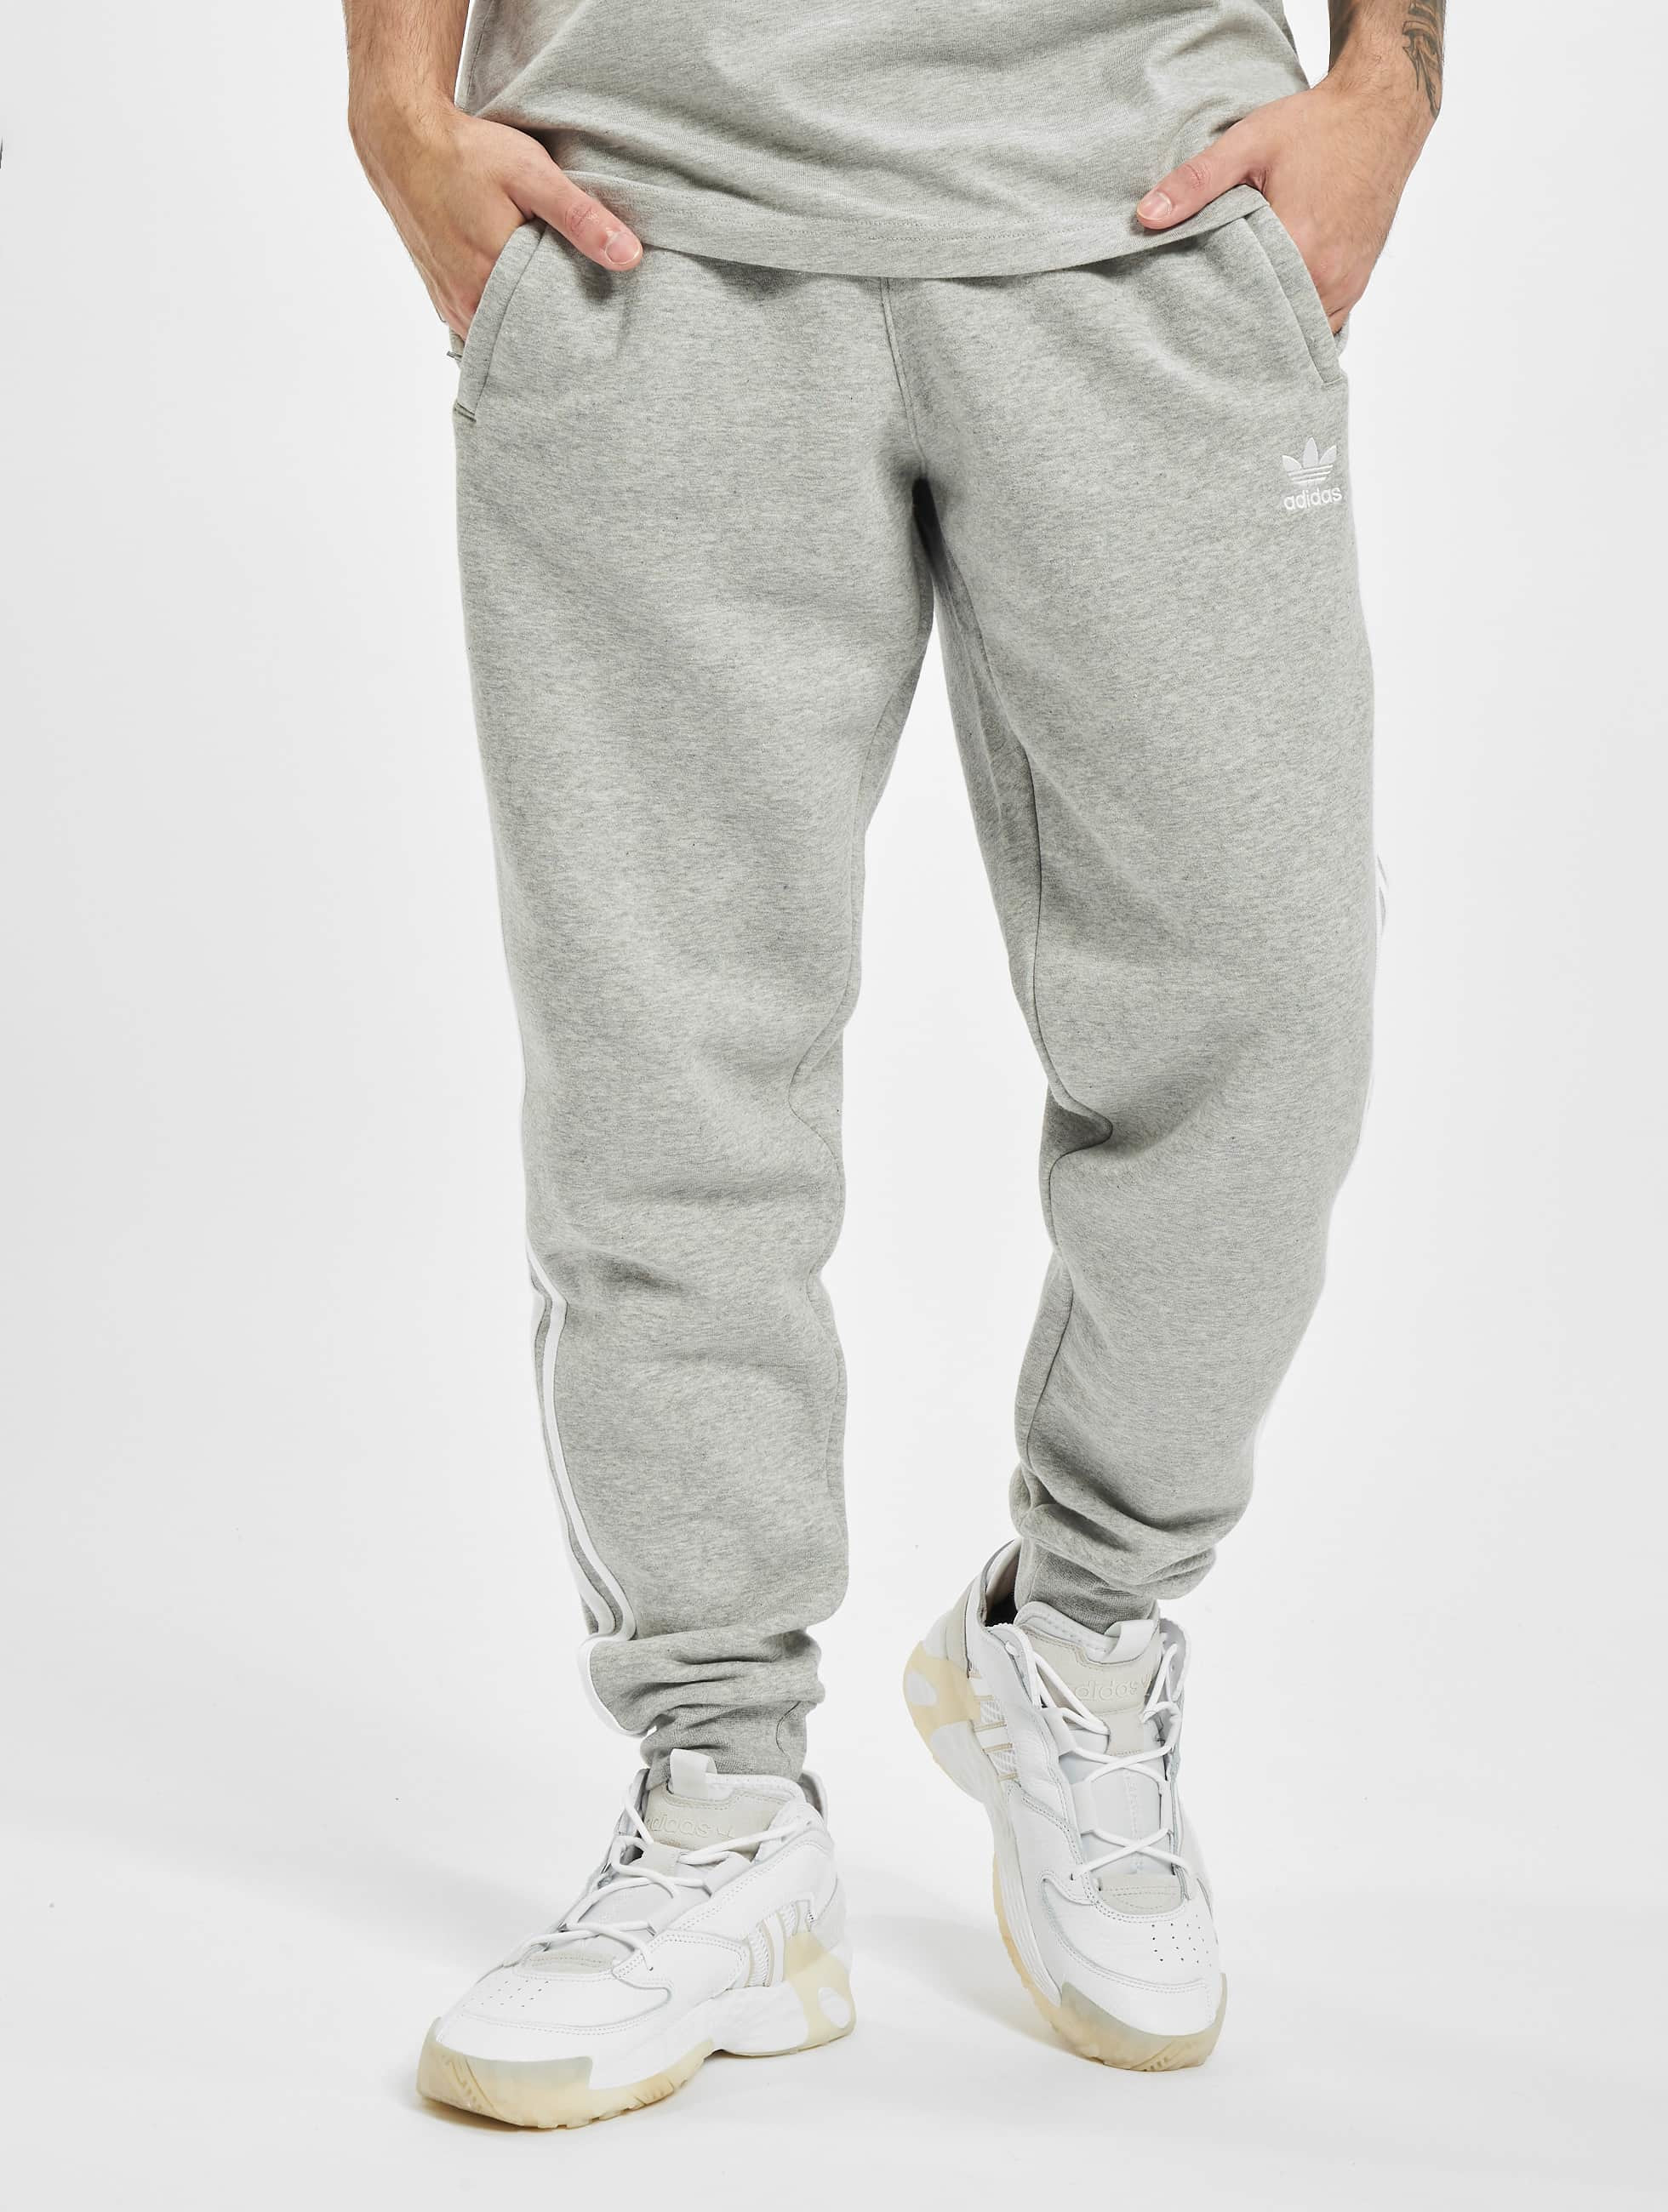 Leugen Crimineel Integratie adidas Originals broek / joggingbroek 3-Stripes in grijs 801817